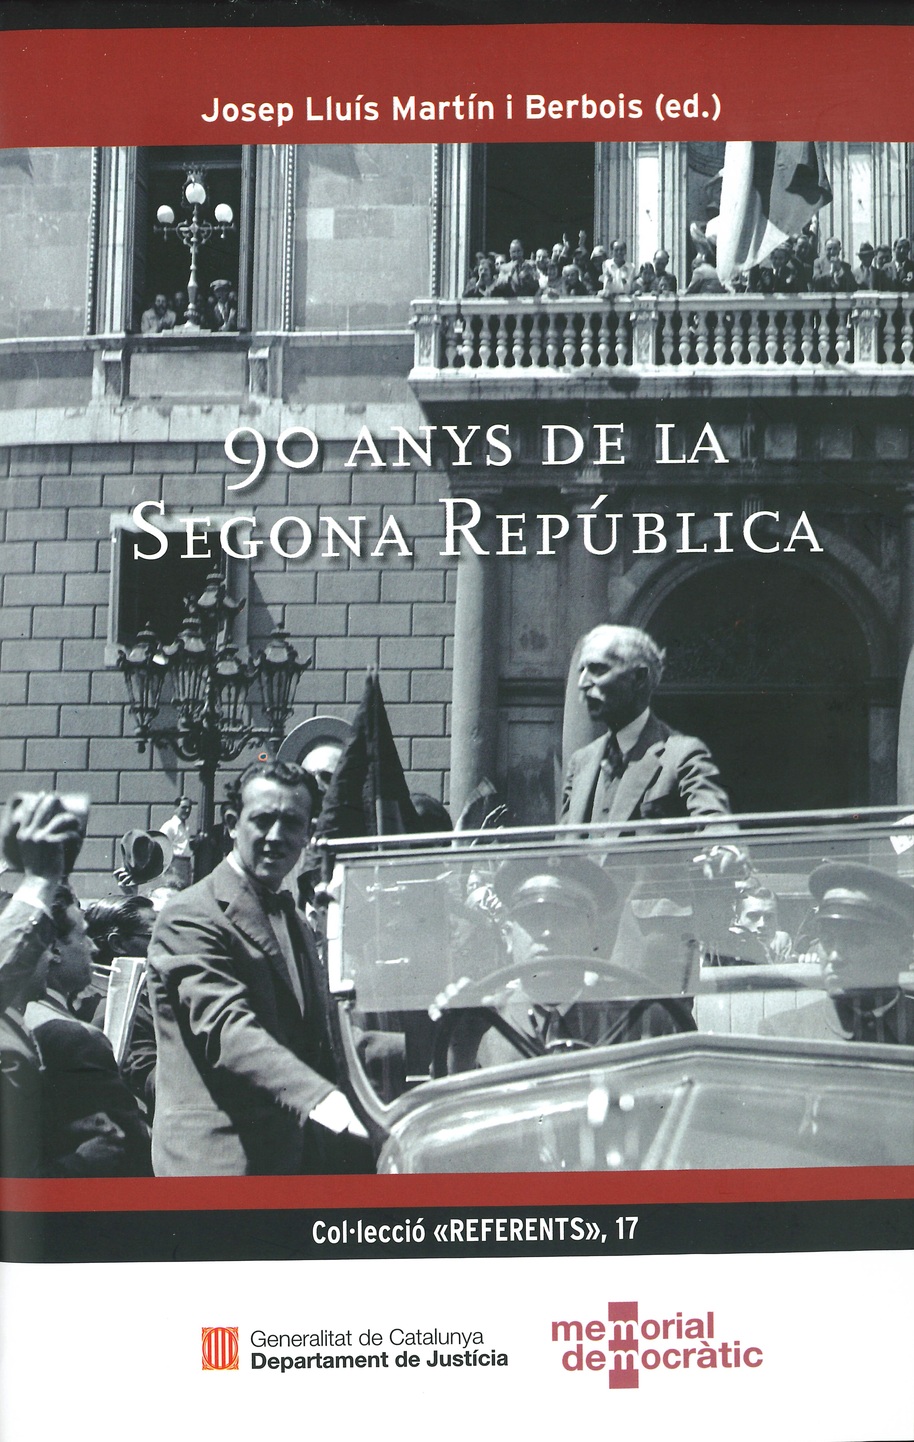 Imagen de portada del libro 90 anys de la segona república